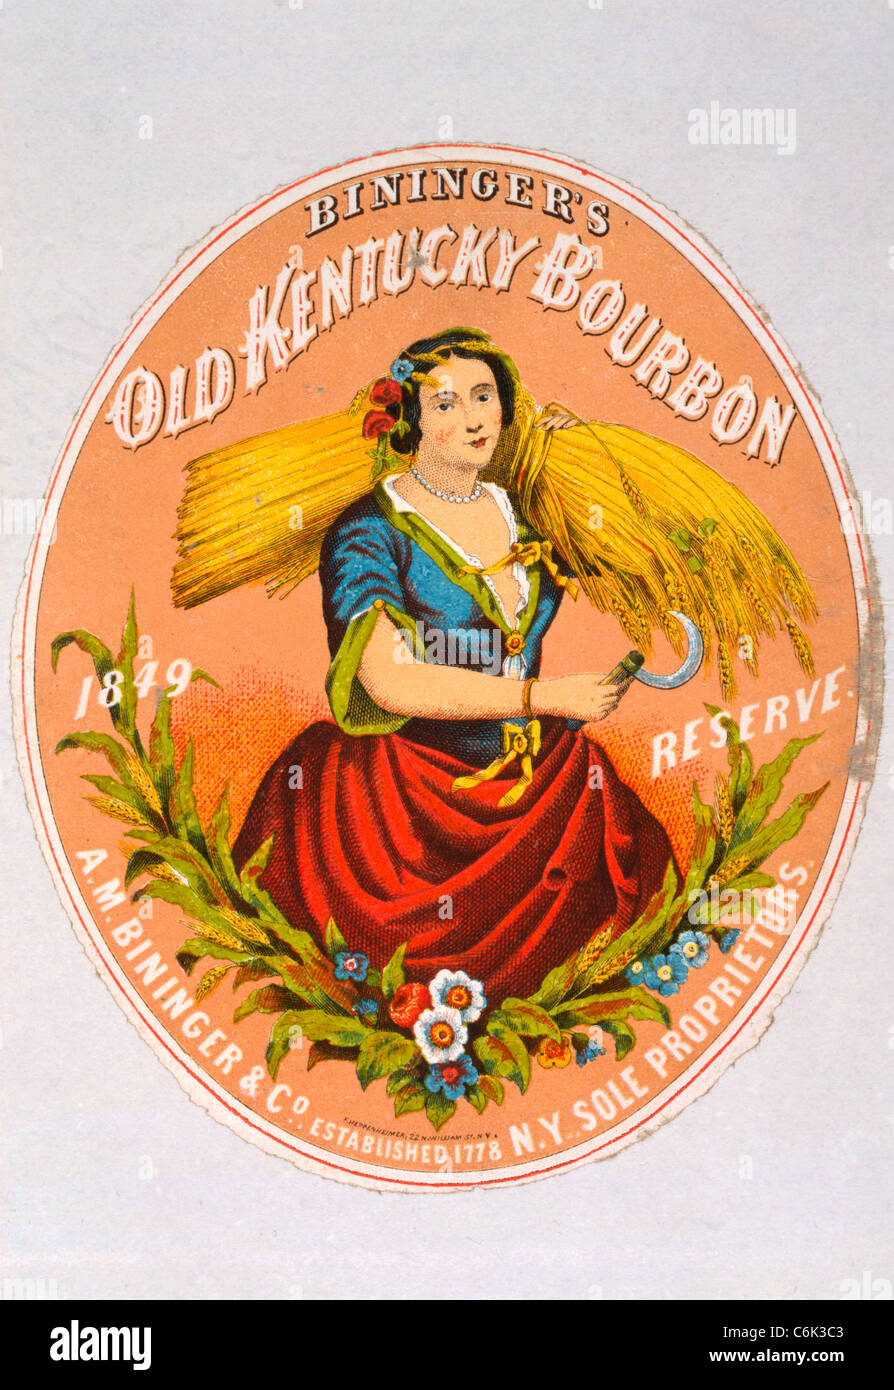 Bininger des alten Kentucky Bourbon, Uhr Bininger & Co., N.Y Einzelunternehmer / F. Heppenheimer, N.Y. 1860 Bourbon-Anzeige Stockfoto